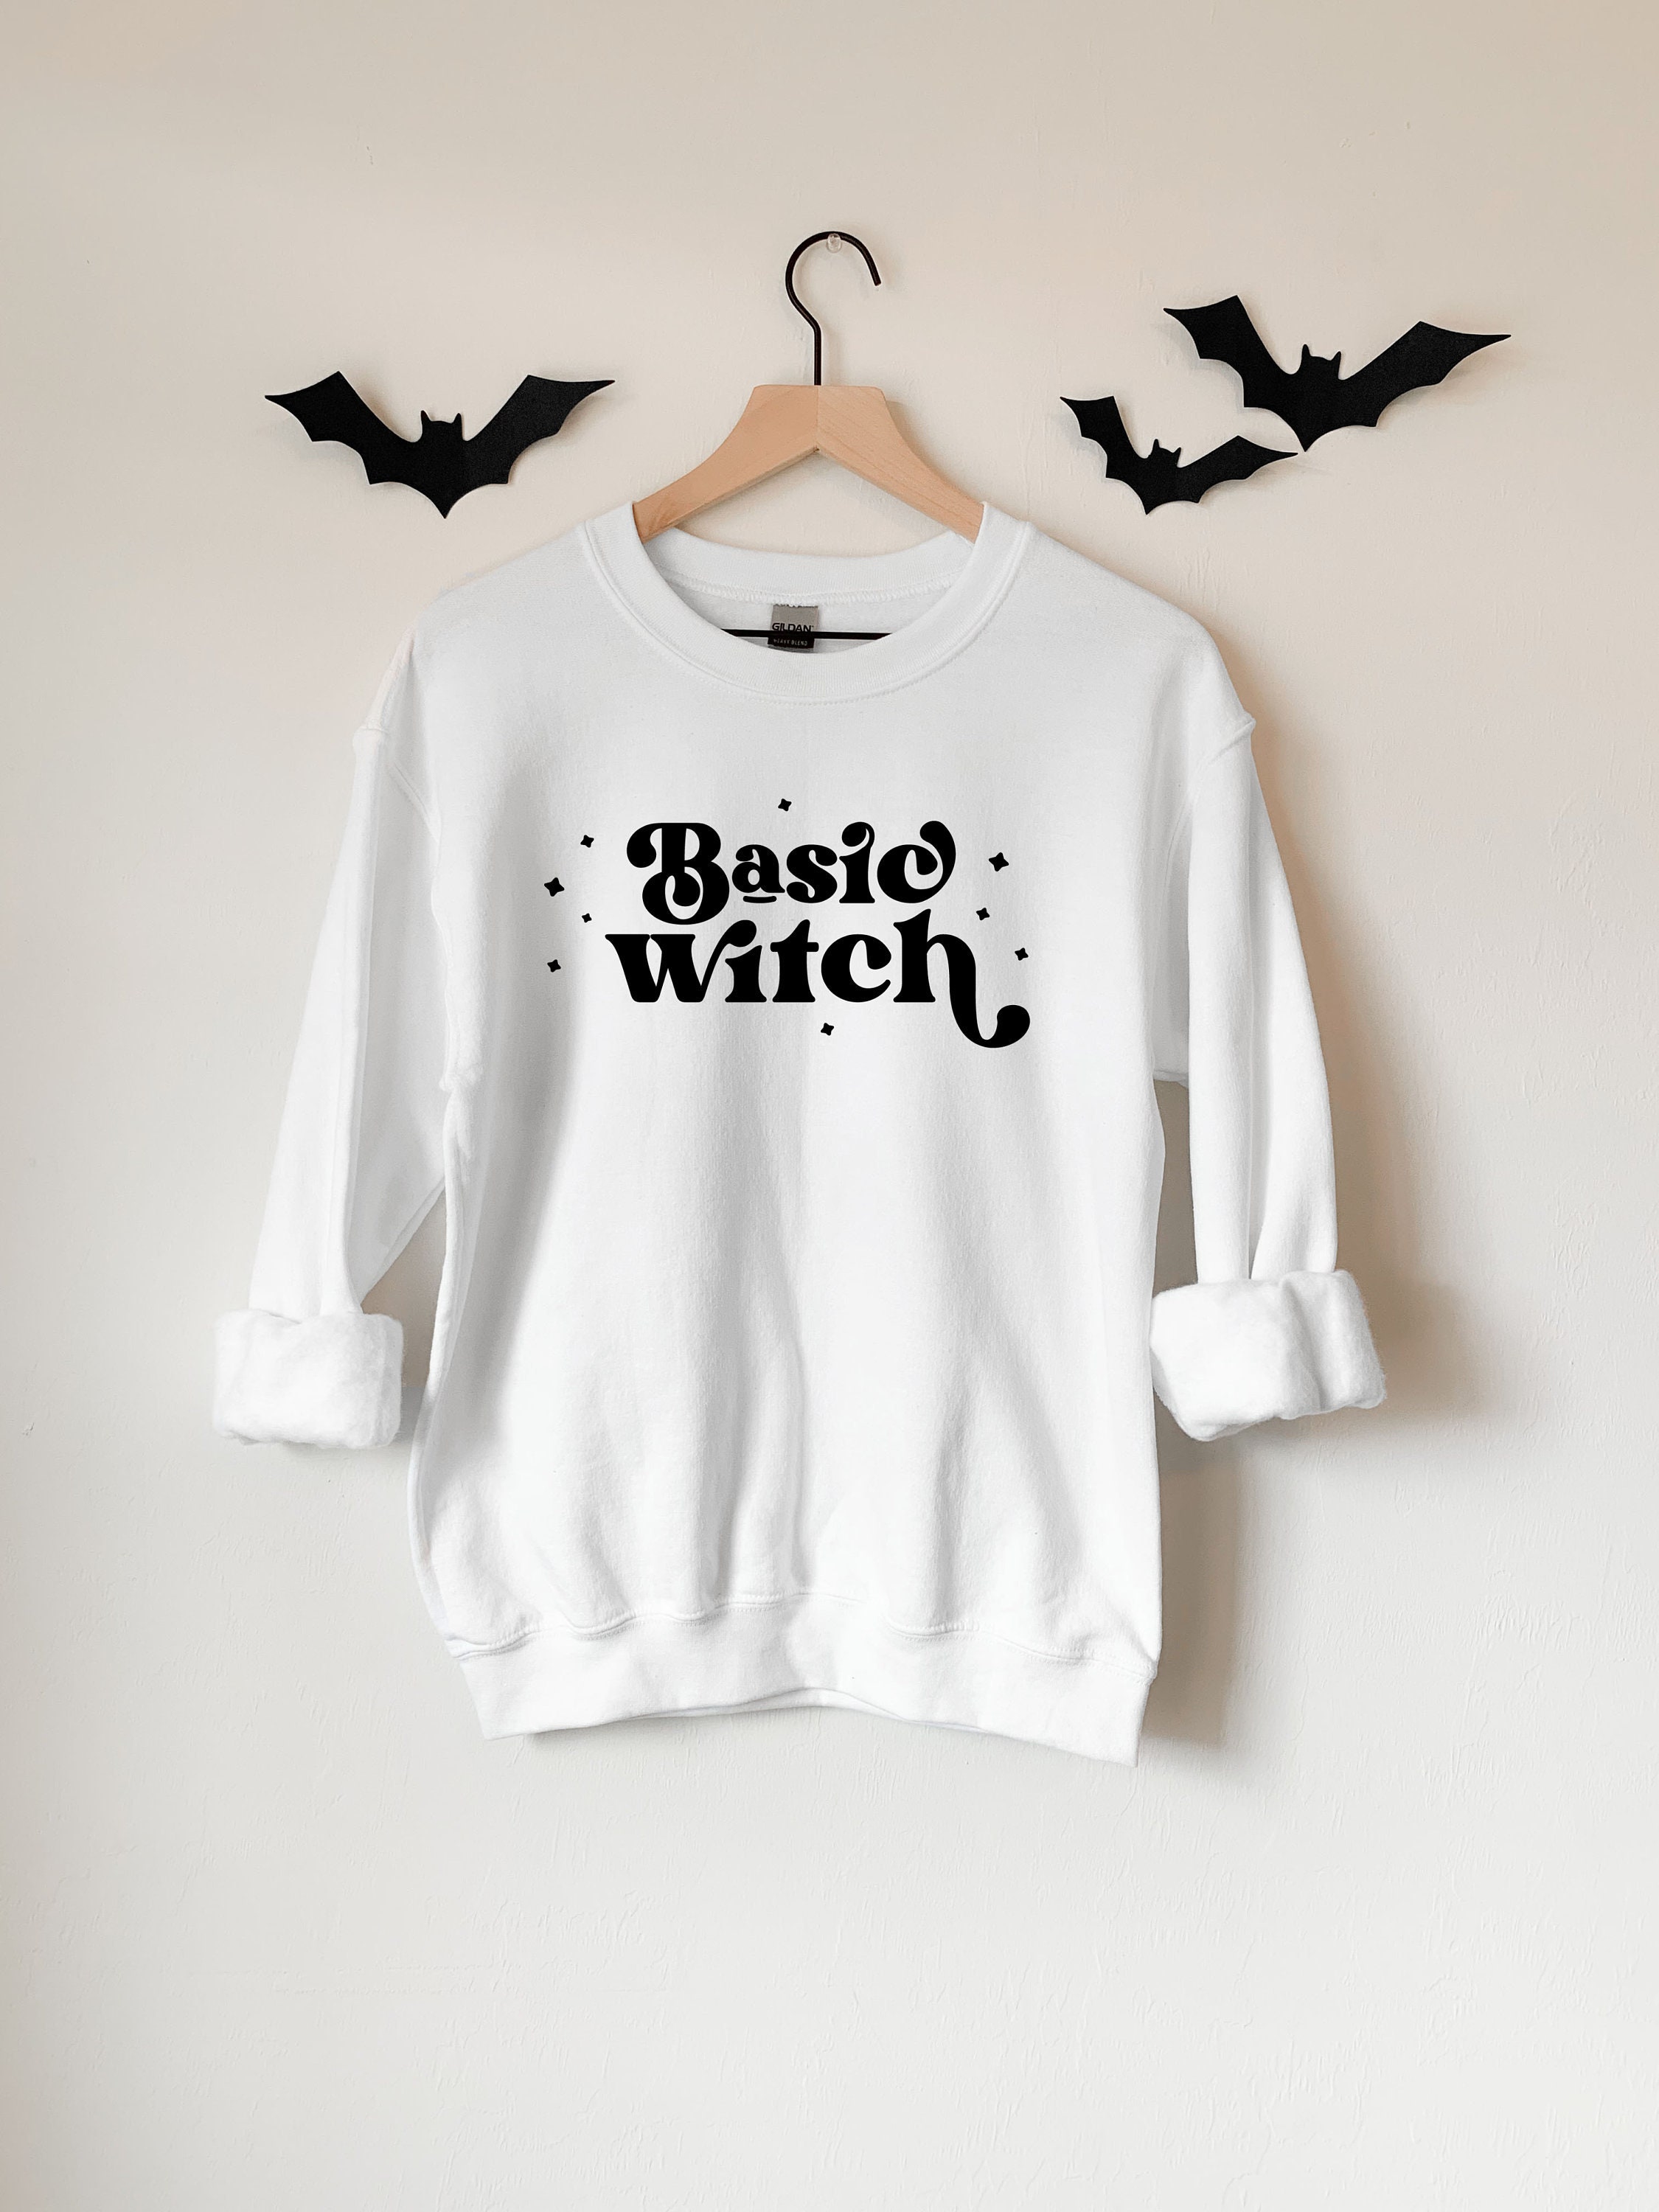 Halloween Sweatshirt Cute Halloween Sweatshirt Spooky Babe Sweatshirt Funny Unisex Crewneck Sweatshirt Halloween Shirt For Women